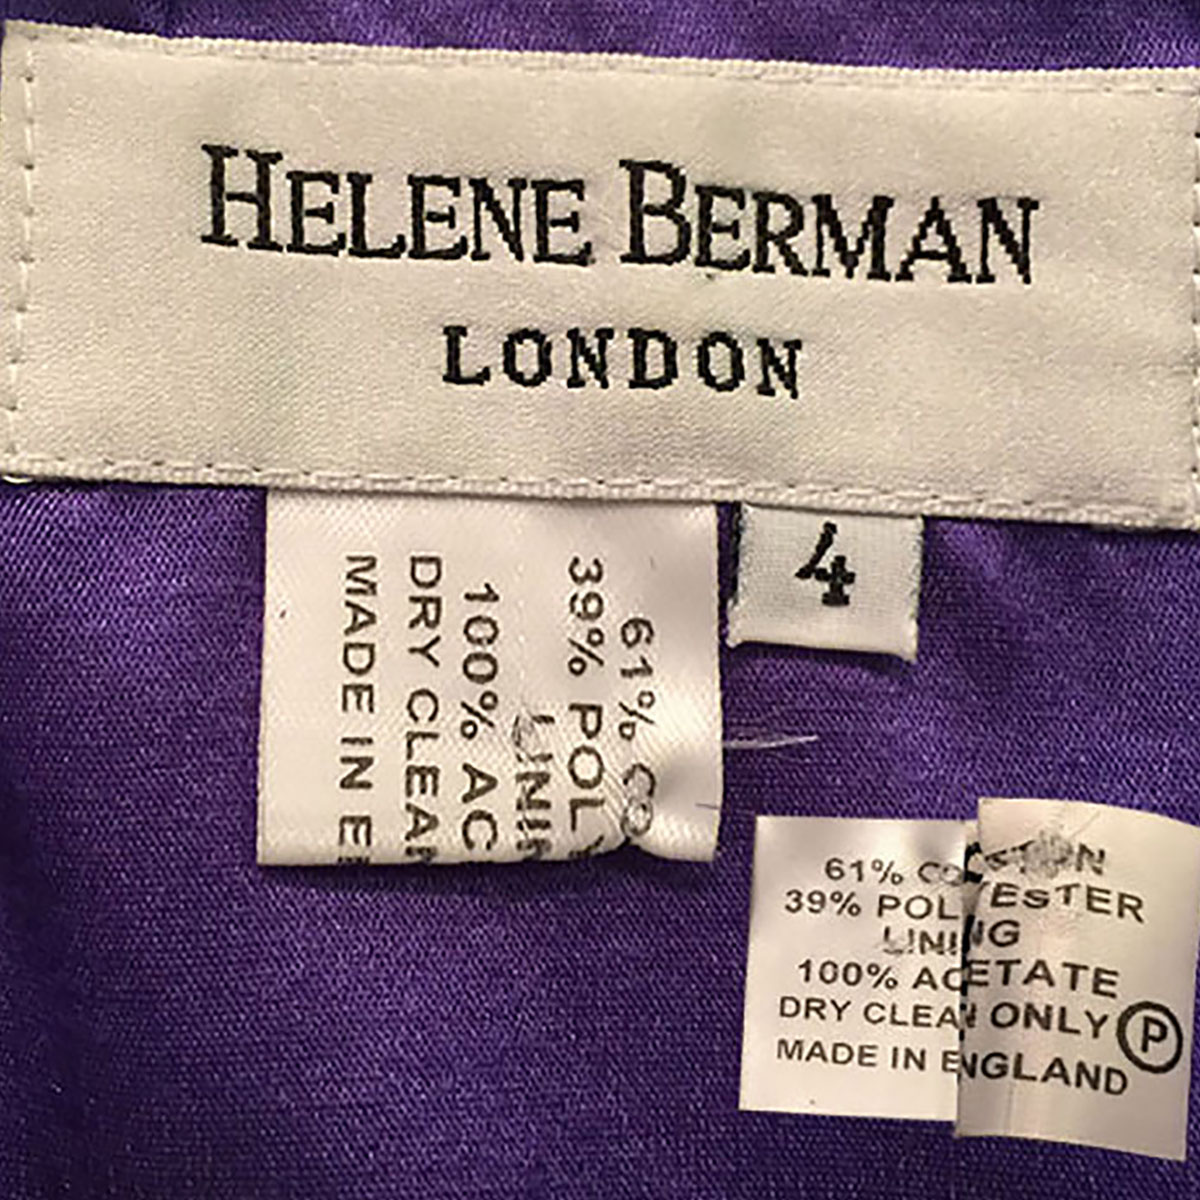 Helen Berman Label